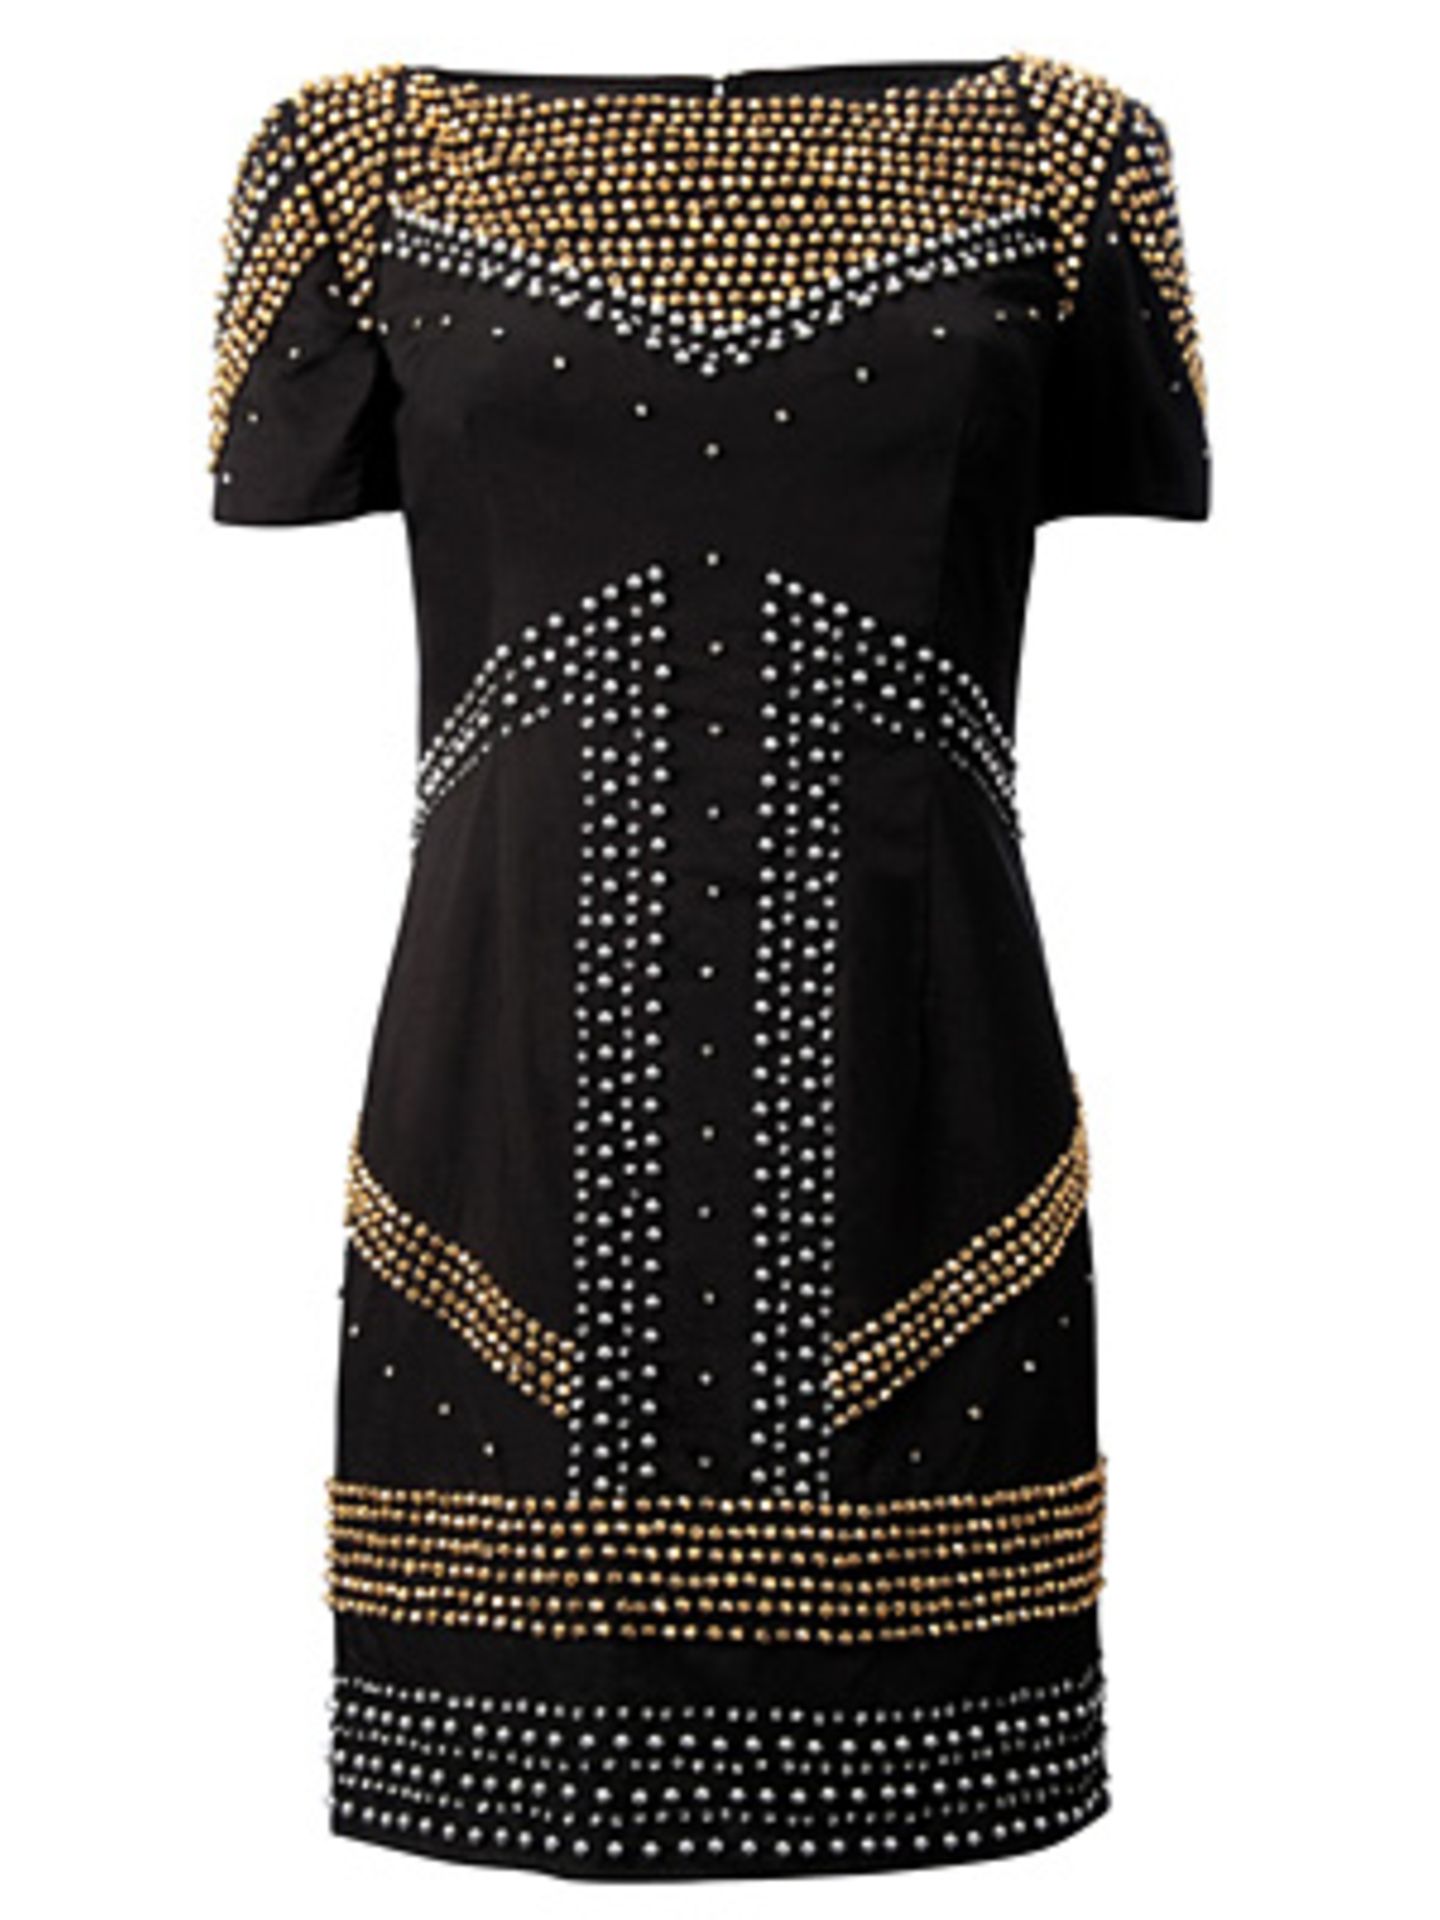 Kleid mit silbernen und goldenen Steinen von French Connection, um 180 Euro